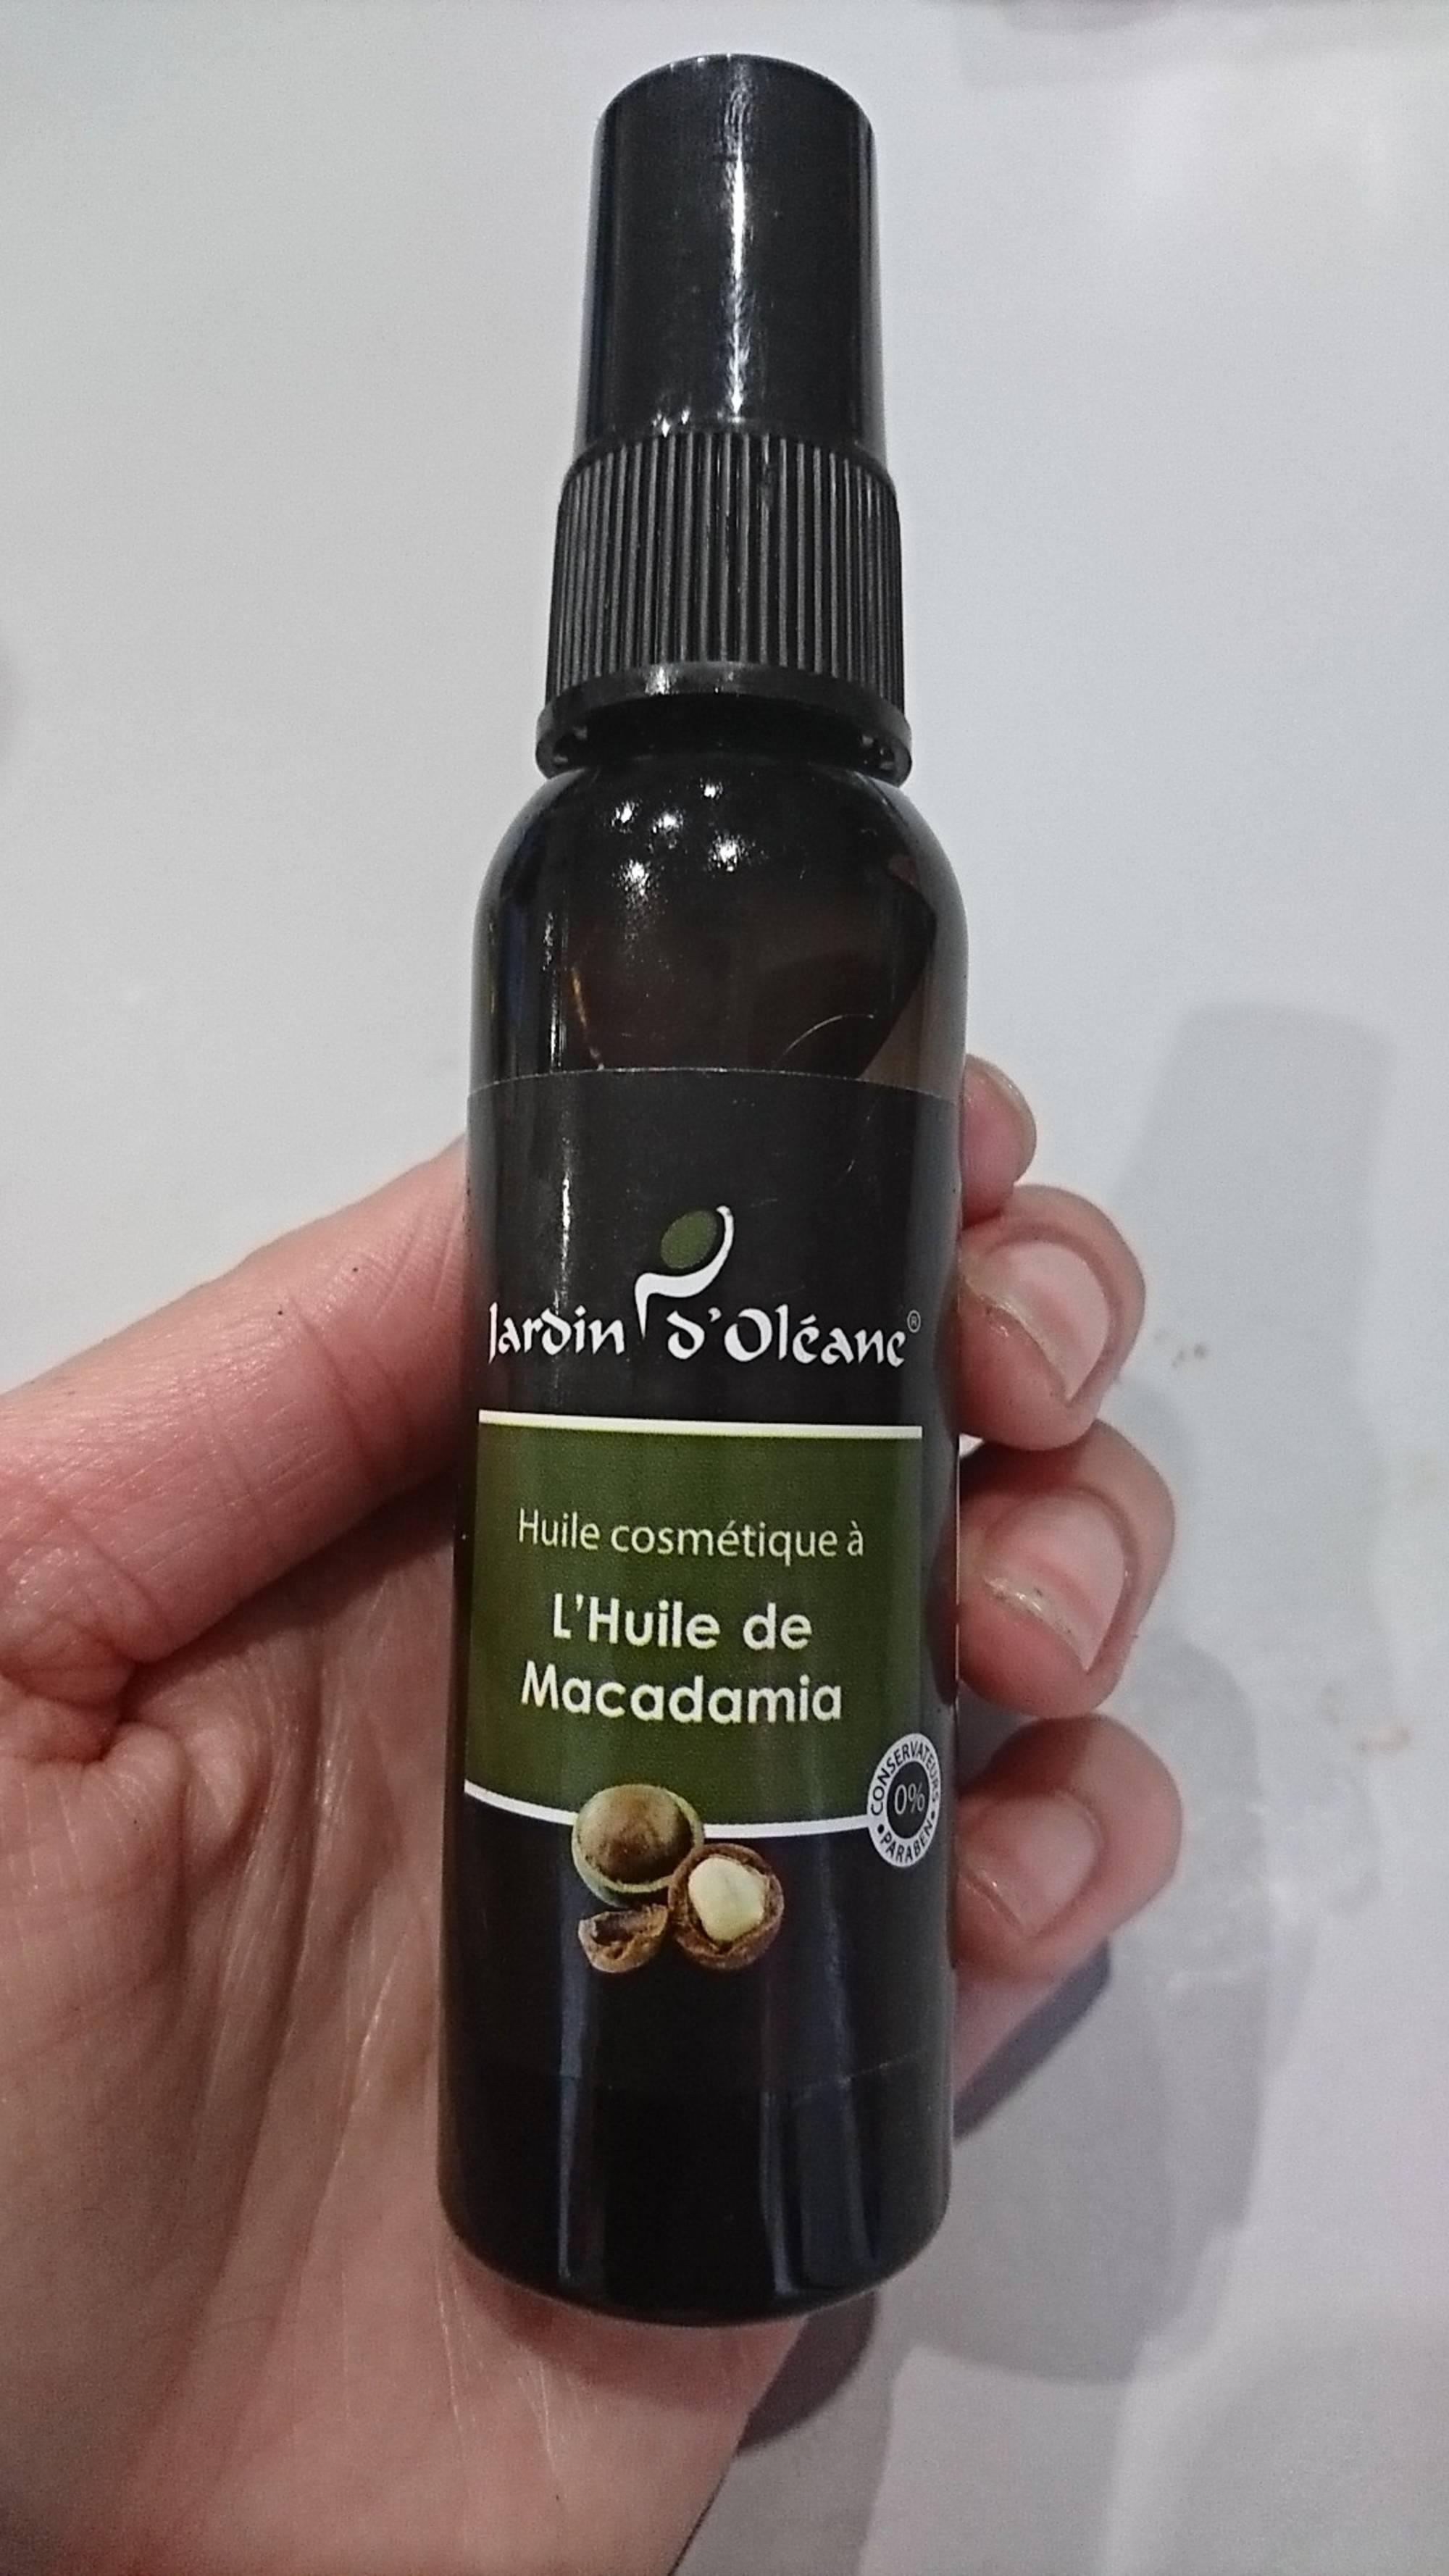 JARDIN D'OLÉANE - Huile cosmétique à l'huile de macadamia 